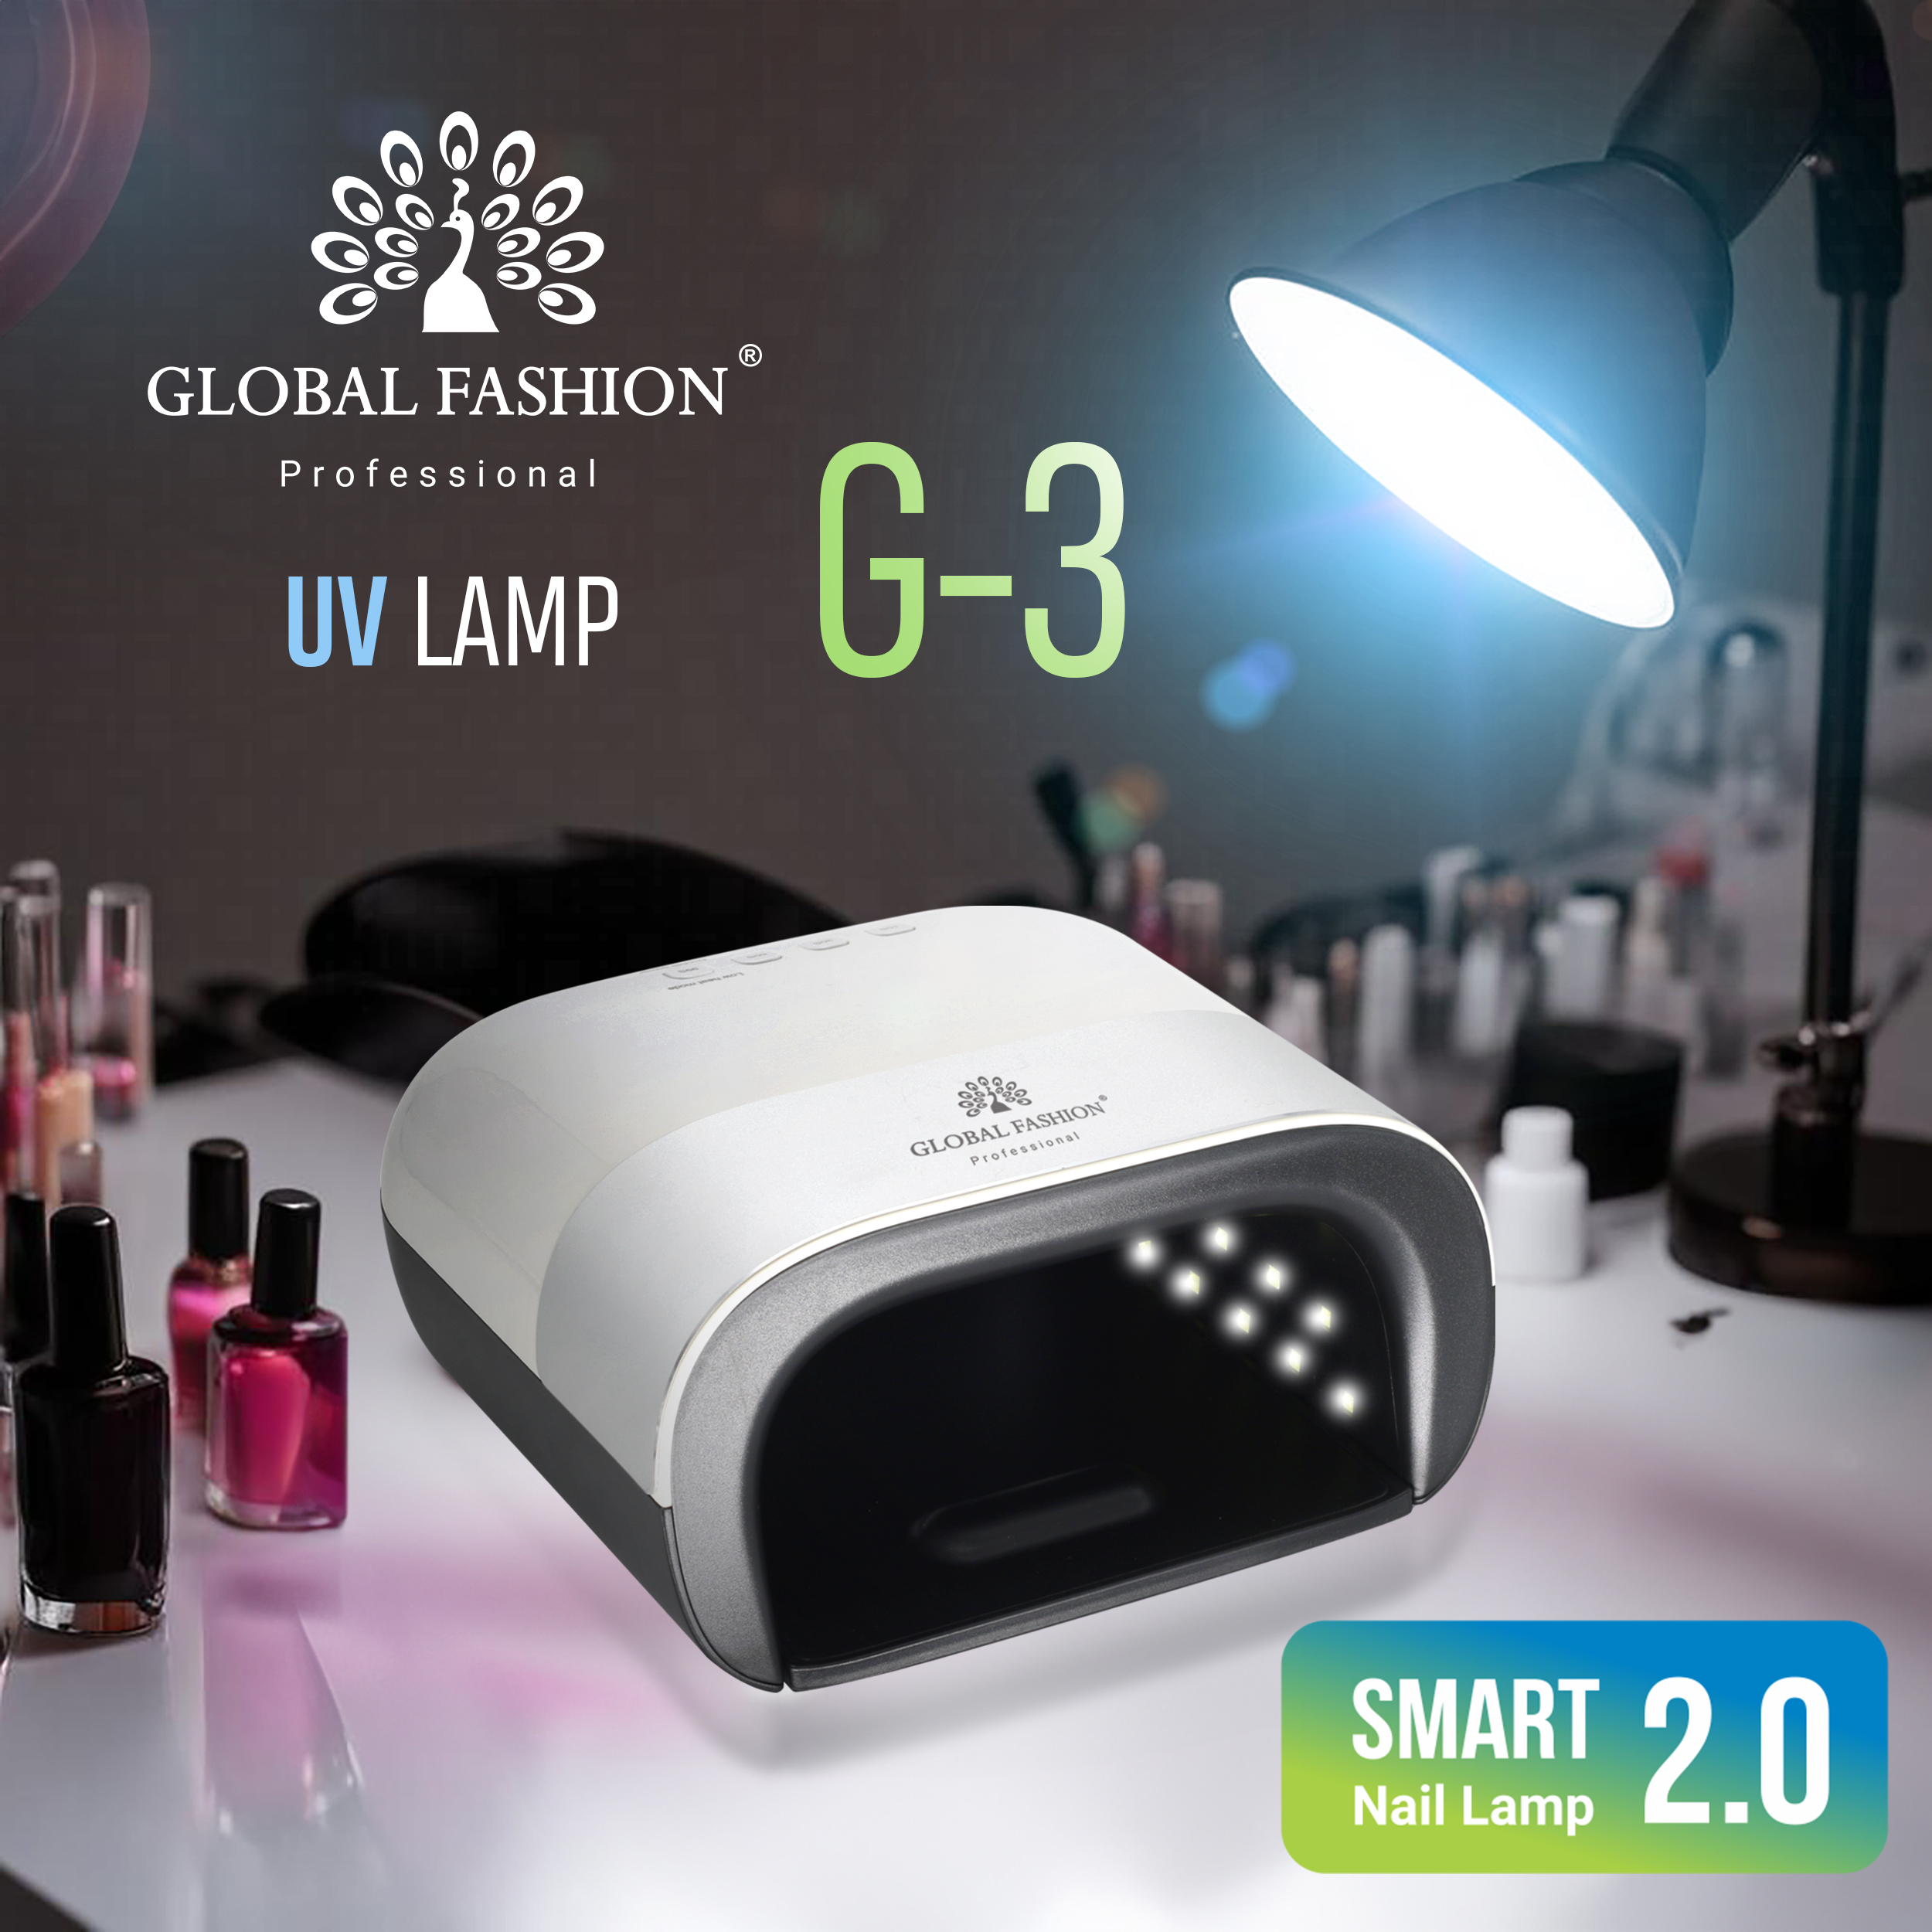 Лампа для сушки ногтей LED/UV Professional Smart 2.0 48W G-3 Global Fashion: инновационный продукт высокого качества